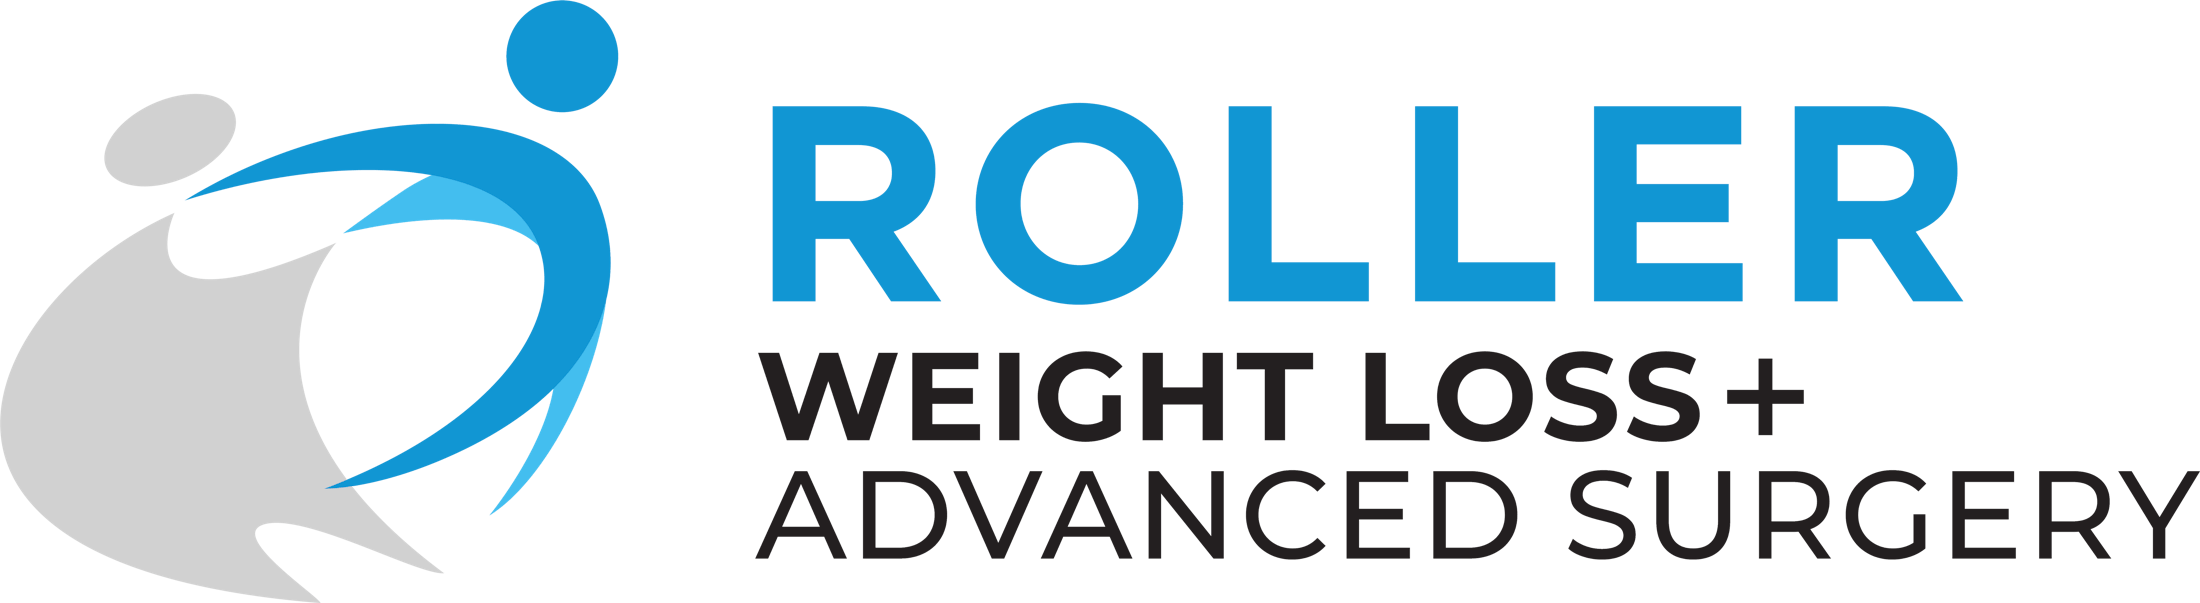 Roller Weight Loss & Advanced Surgery Website Logo